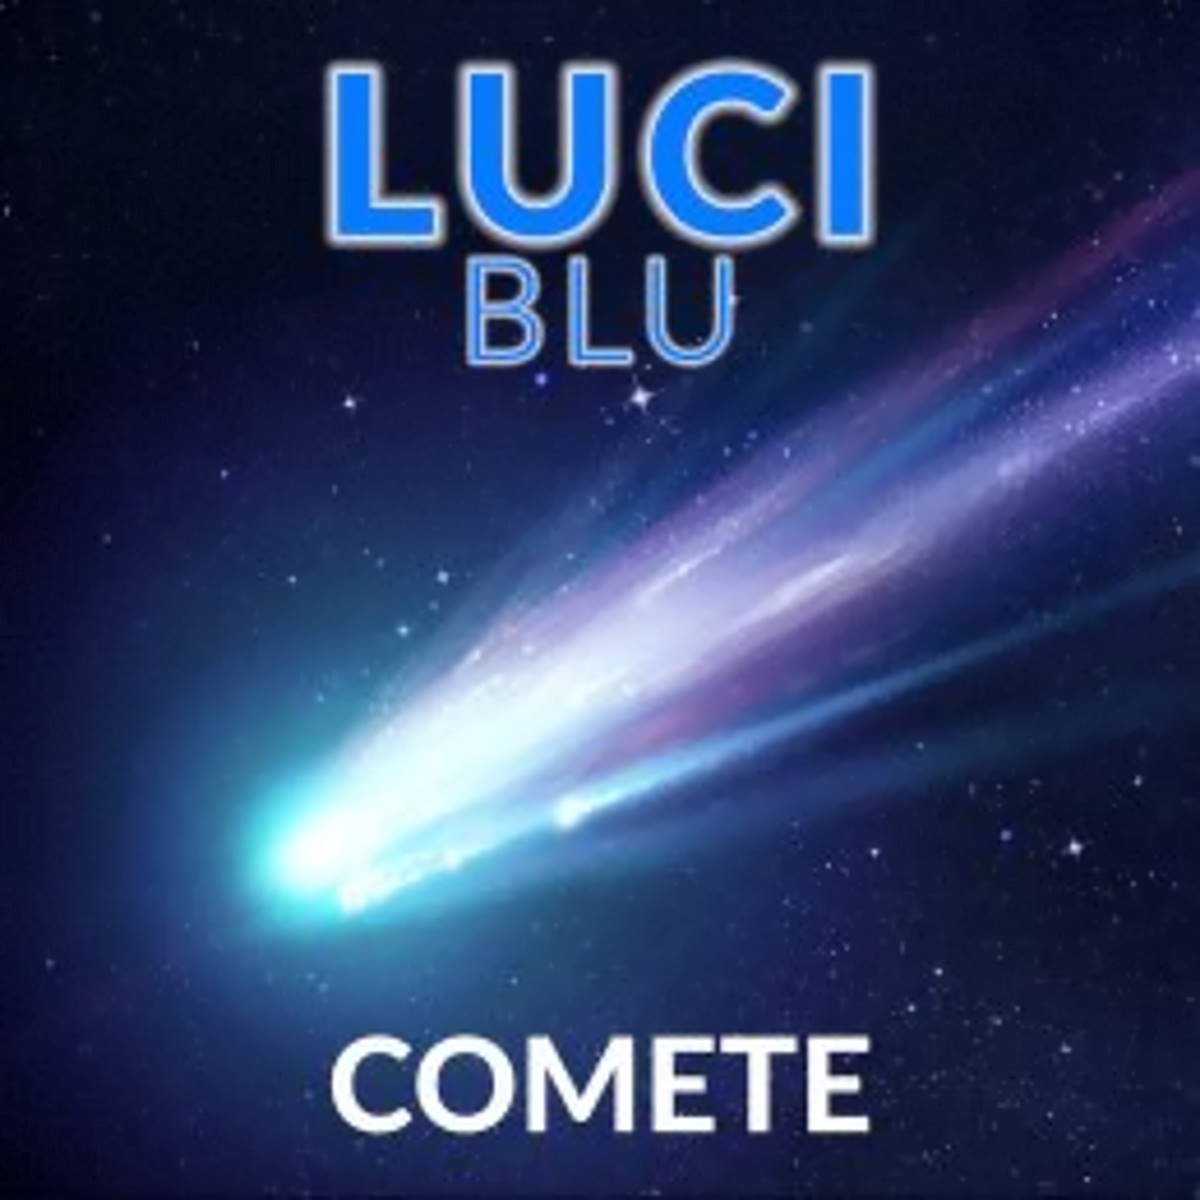 LUCI BLU, “Comete” è il nuovo singolo urban pop del duo composto da Giulia Menta e Marco Ballardin